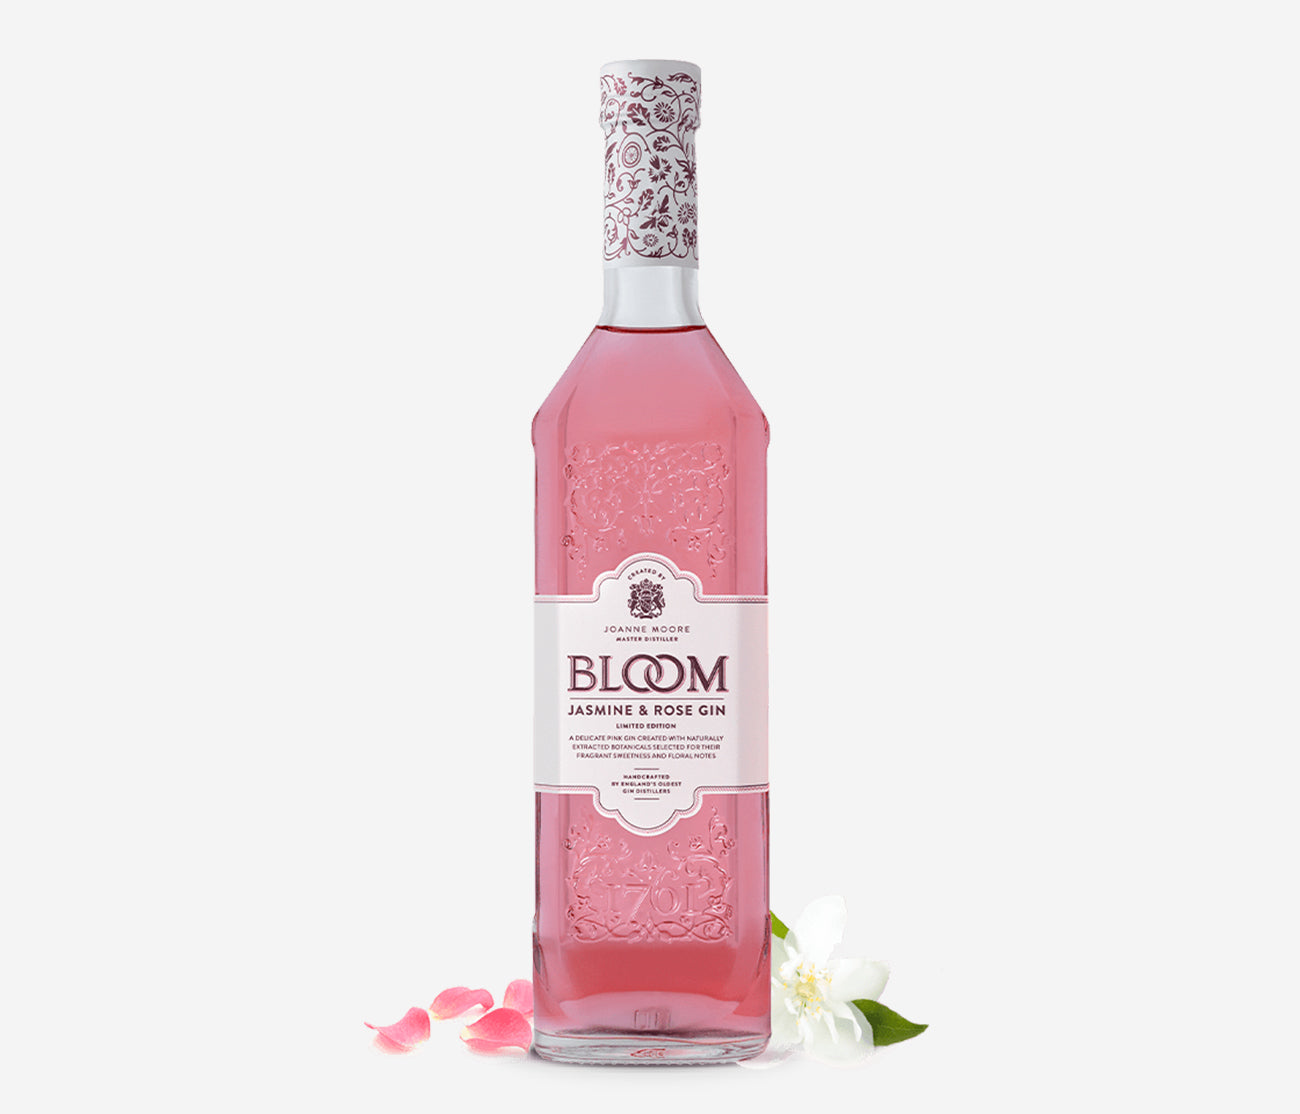 BLOOM Jasmine & Rose Gin – Neat & Shaken